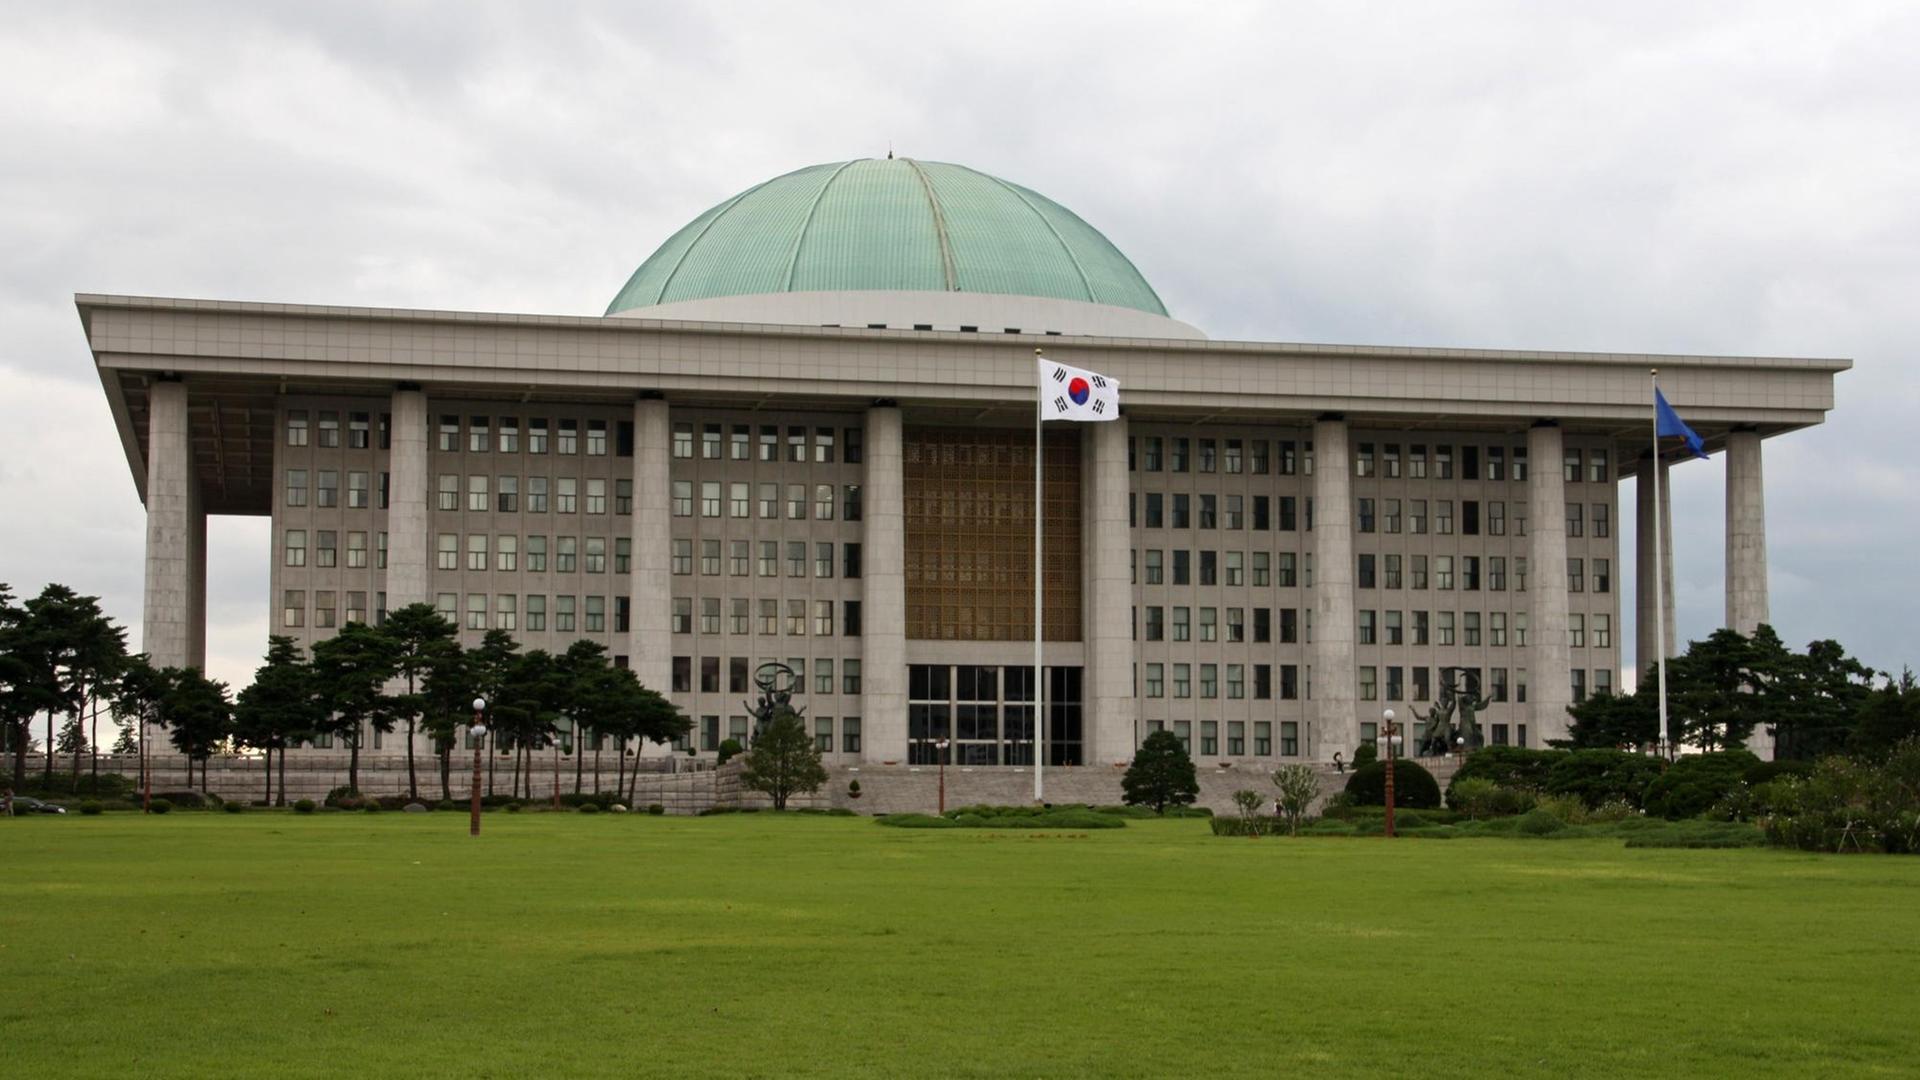 Südkorea: Frontansicht der Gukhoe Nationalversammlung (Parlament) in Seoul.